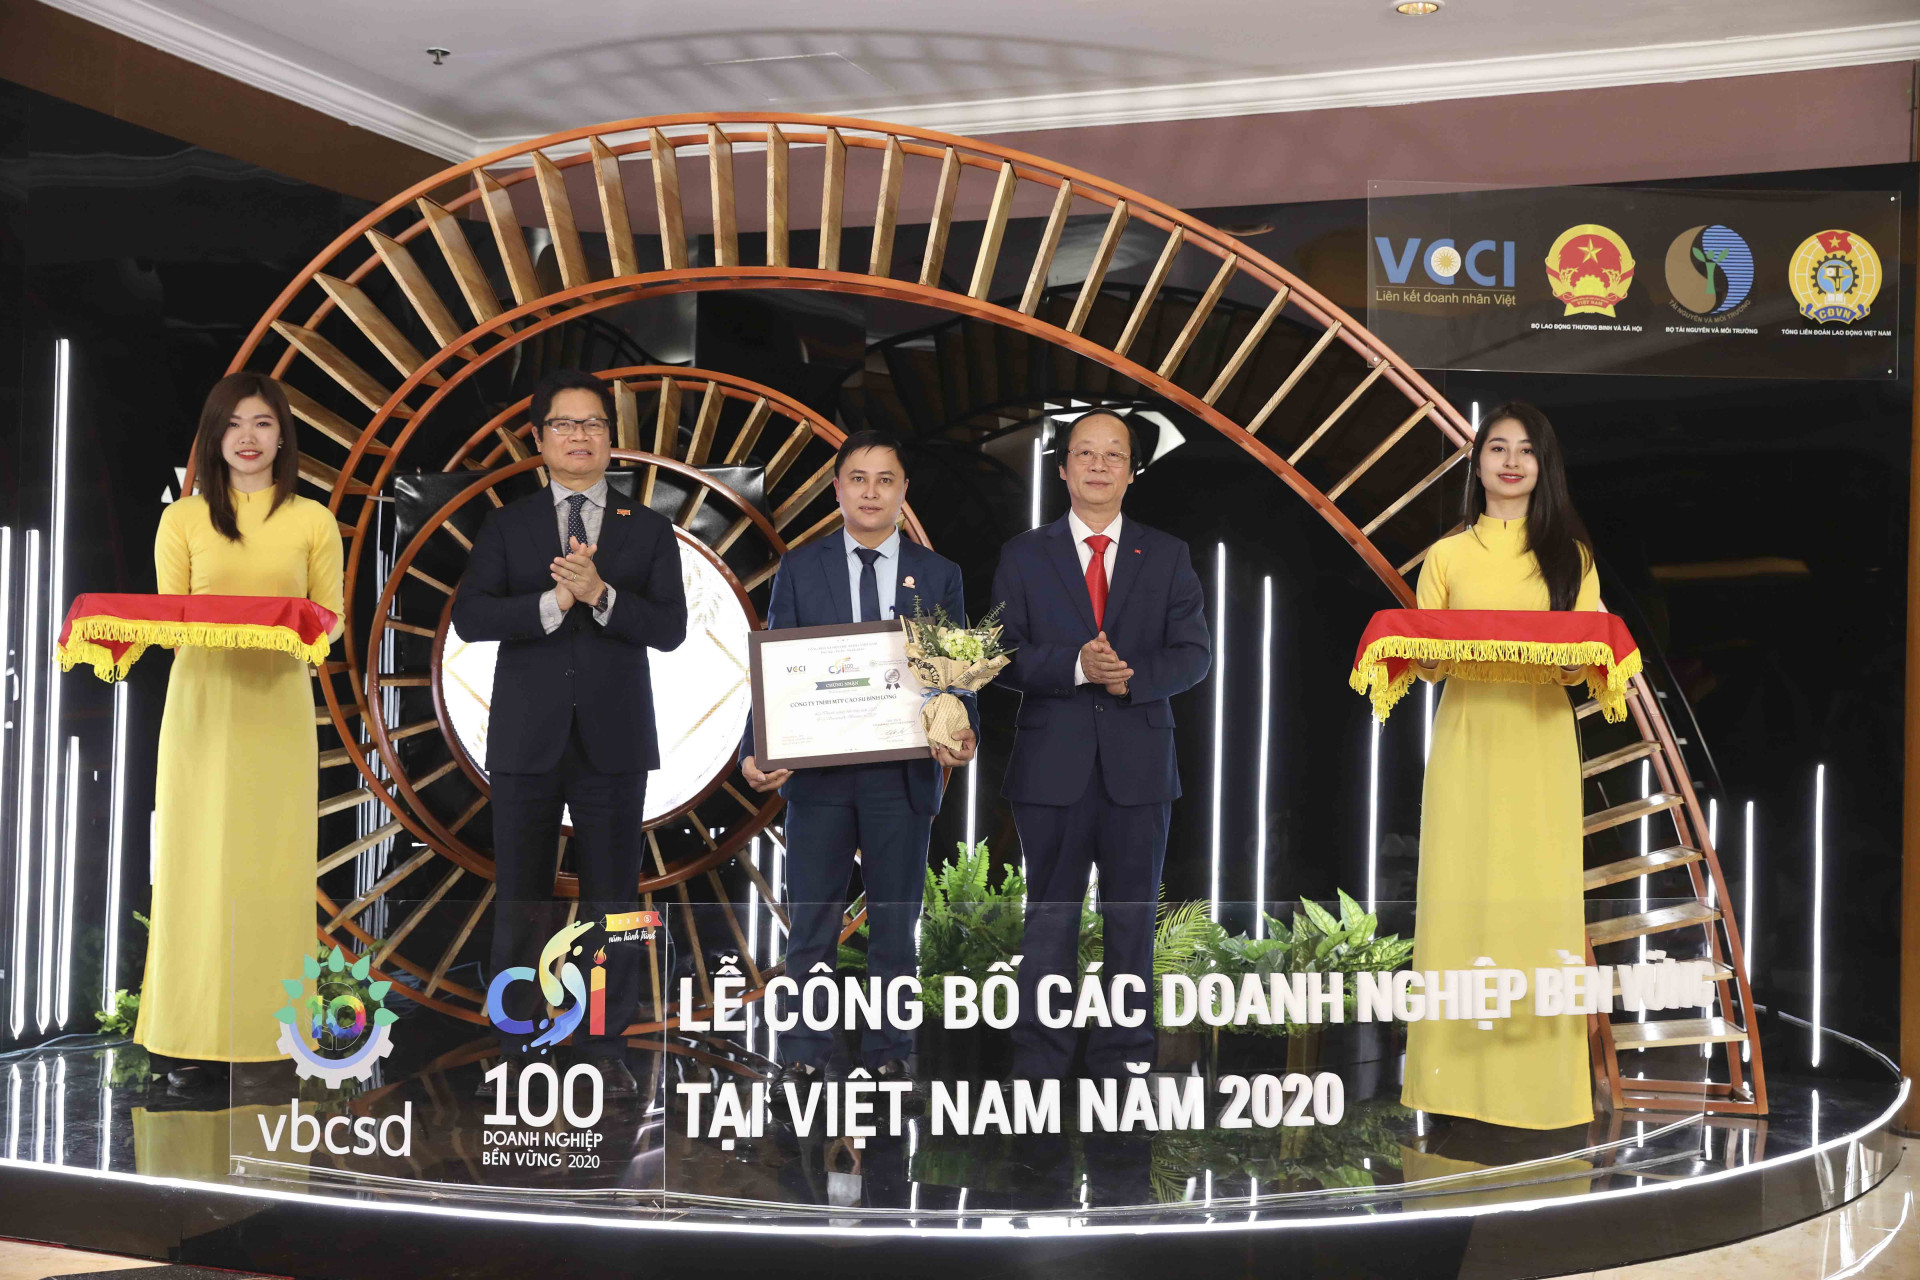  Đại diện Công ty Yến sào Khánh Hòa nhận chứng nhận CSI năm 2020